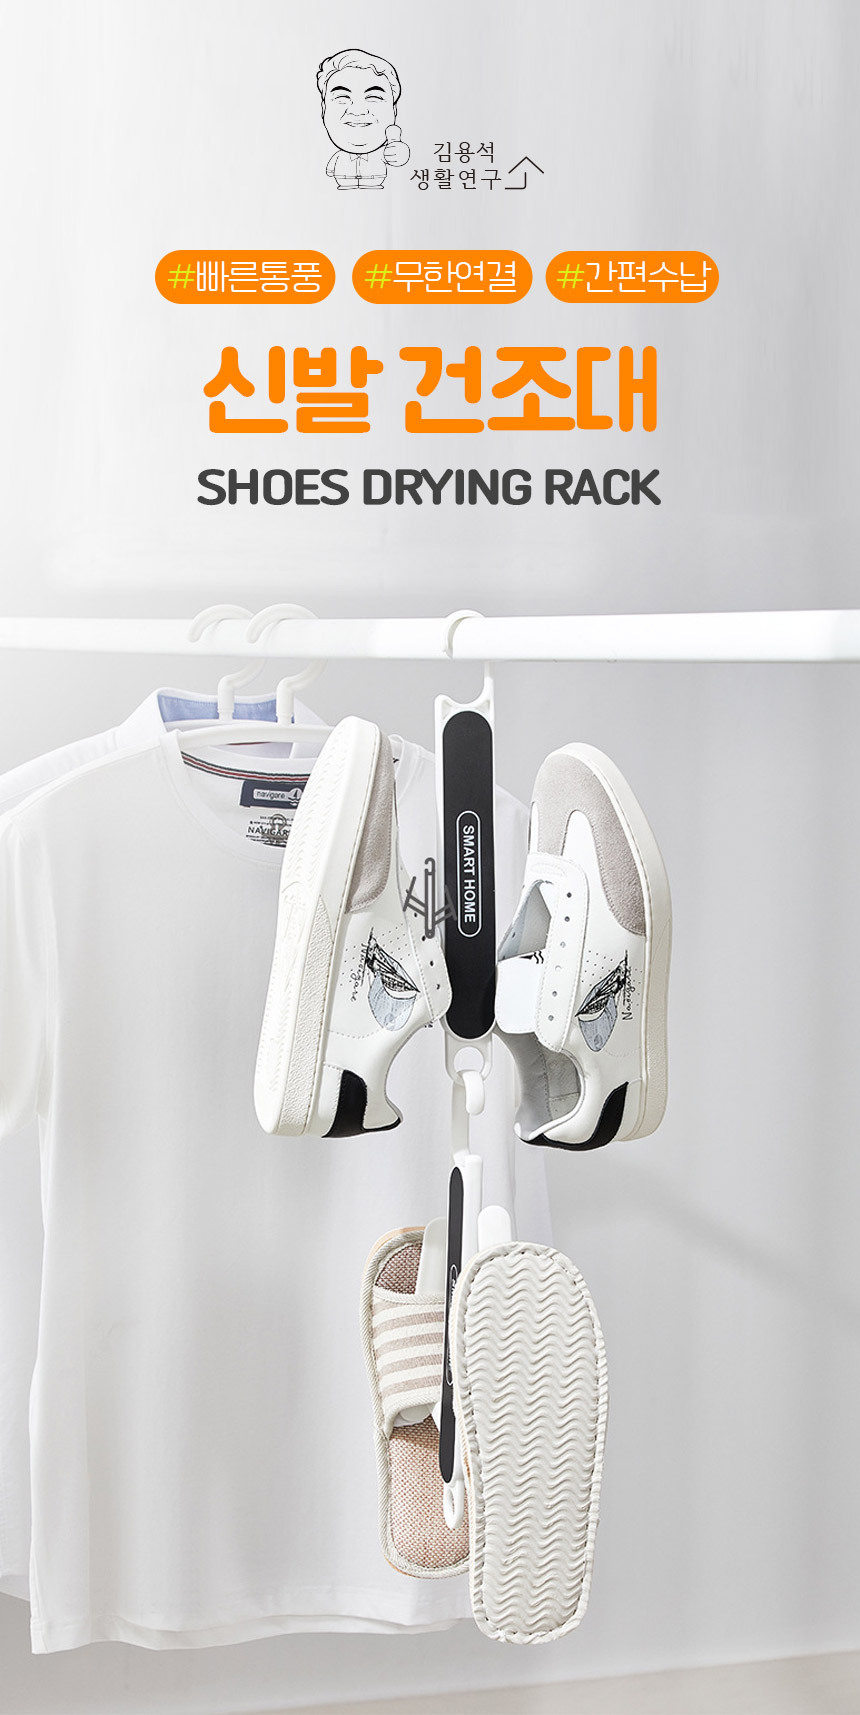 shoes_drying_rack_01.jpg